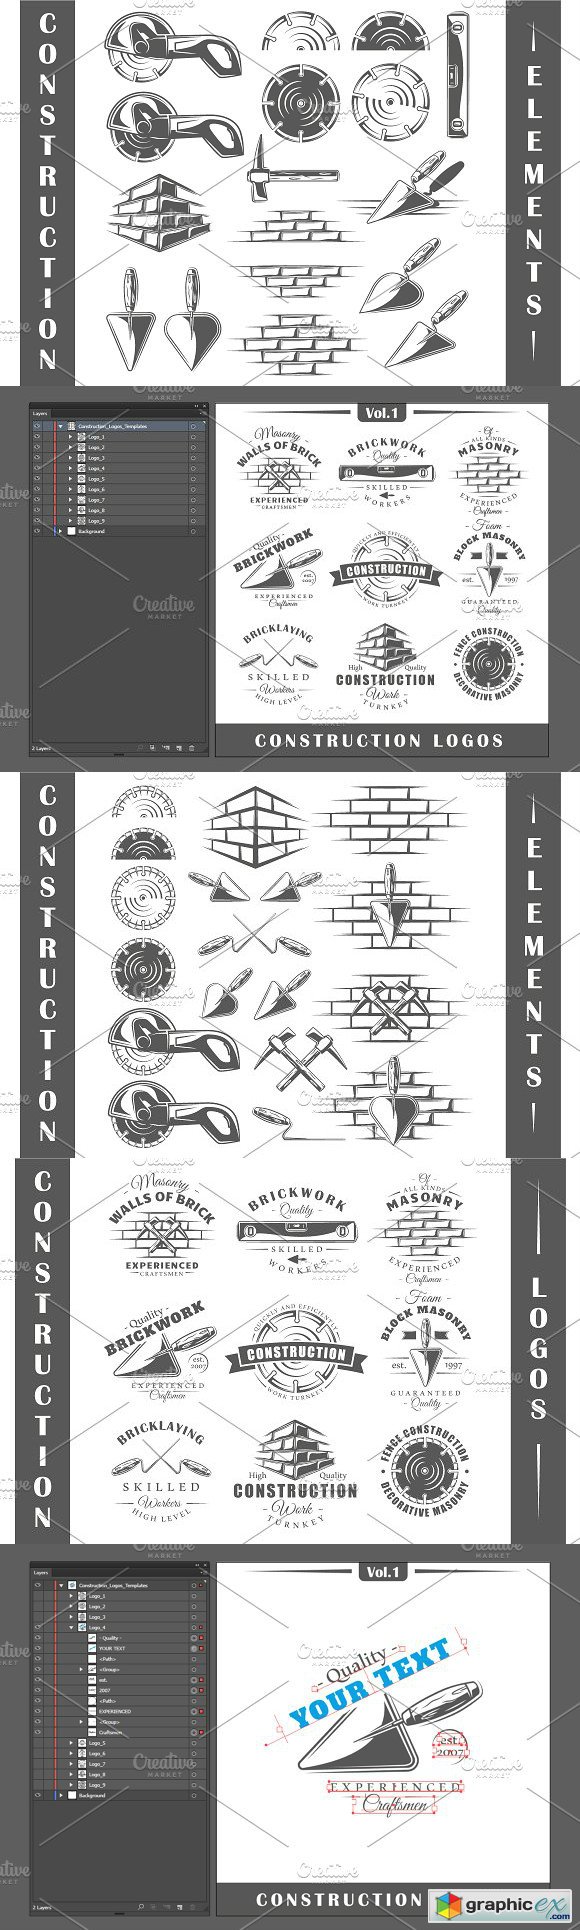 9 Construction Logos Templates Vol1